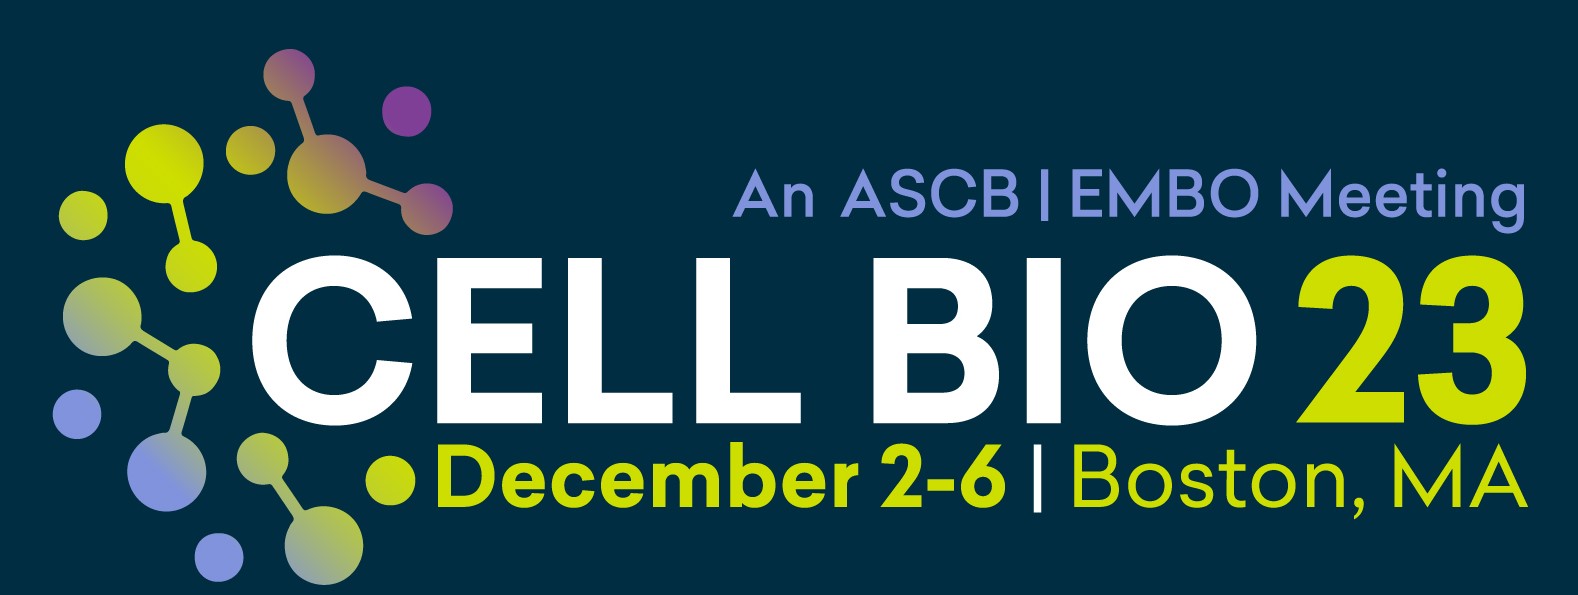 ASCB Cell Bio 2023